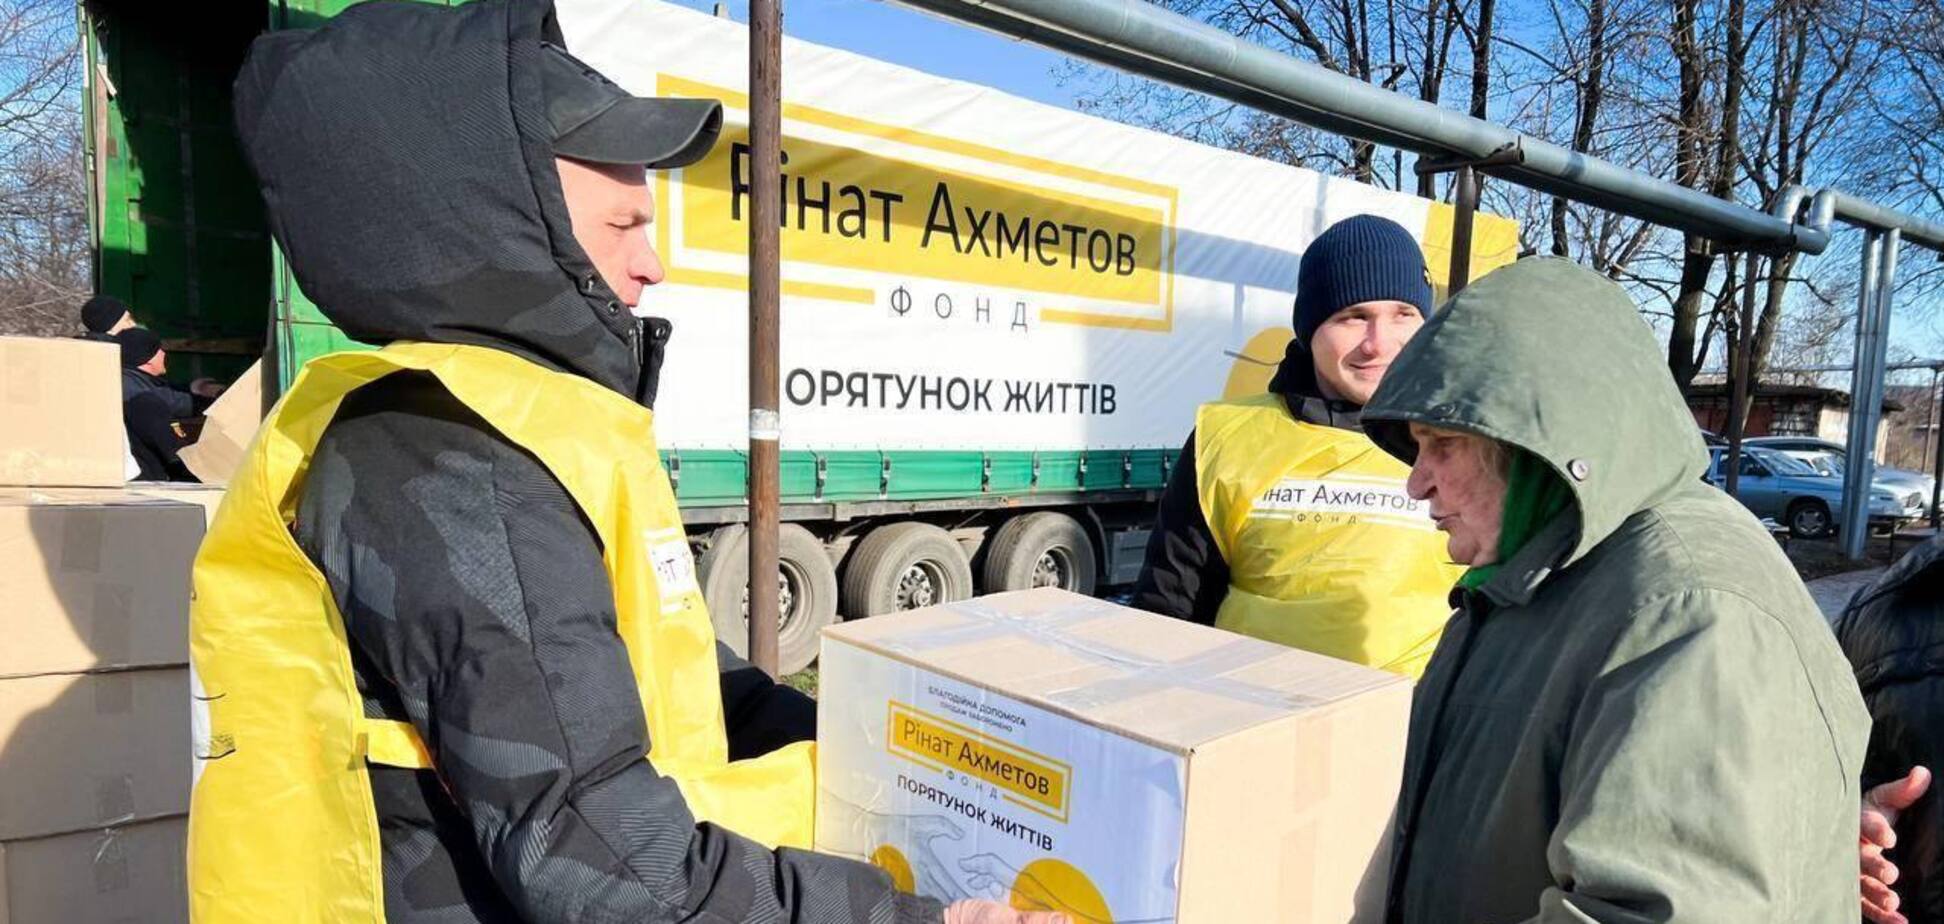 Освобожденные села Луганщины получили гумпомощь от Фонда Ахметова